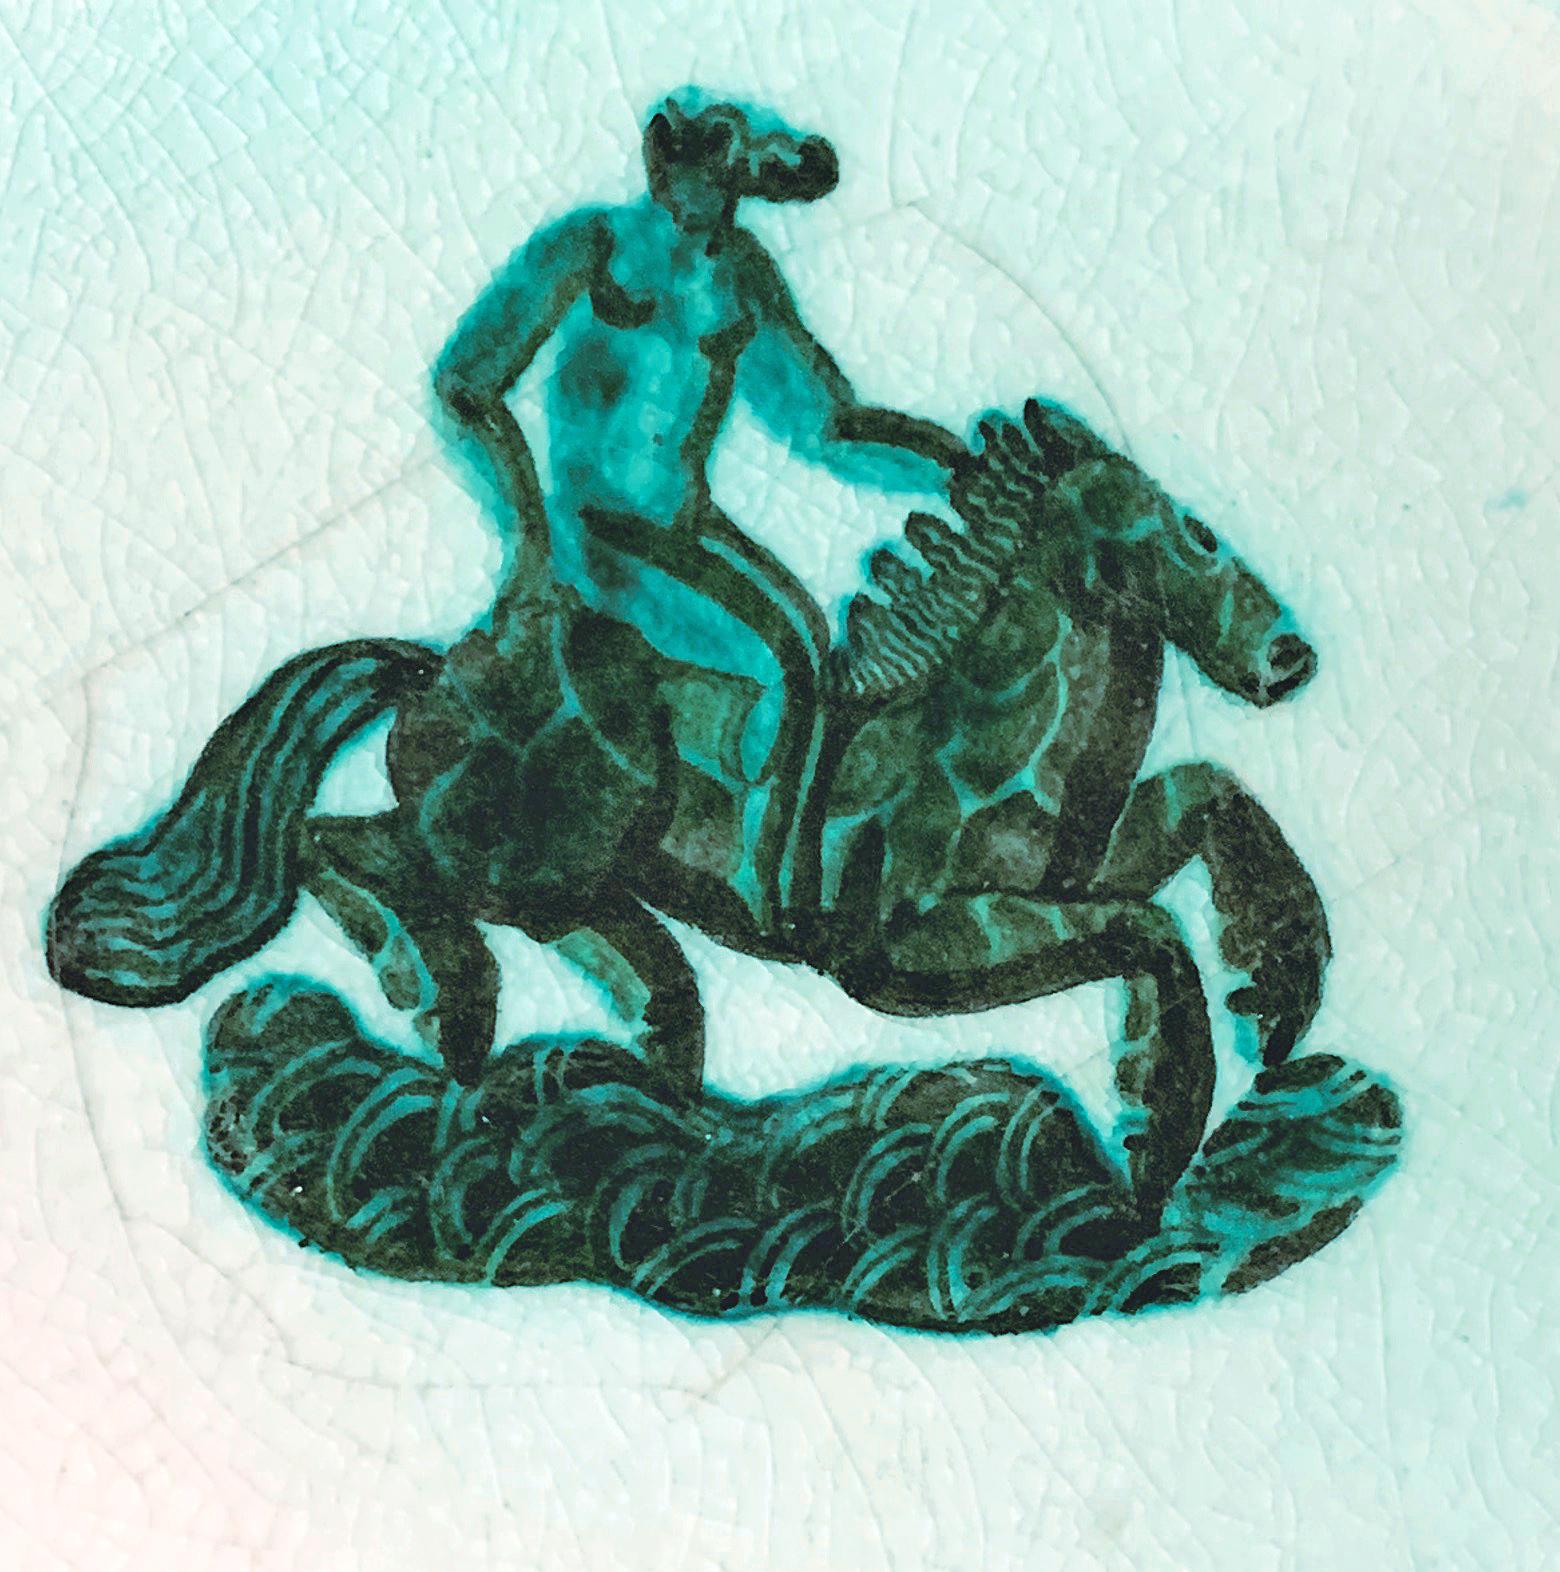 Créée par Jean Mayodon, l'un des grands maîtres de la porcelaine et de la céramique Art déco, cette assiette à décor vert pâle représente la déesse Epona, protectrice des chevaux, chevauchant son destrier. Les glaçures translucides vertes et